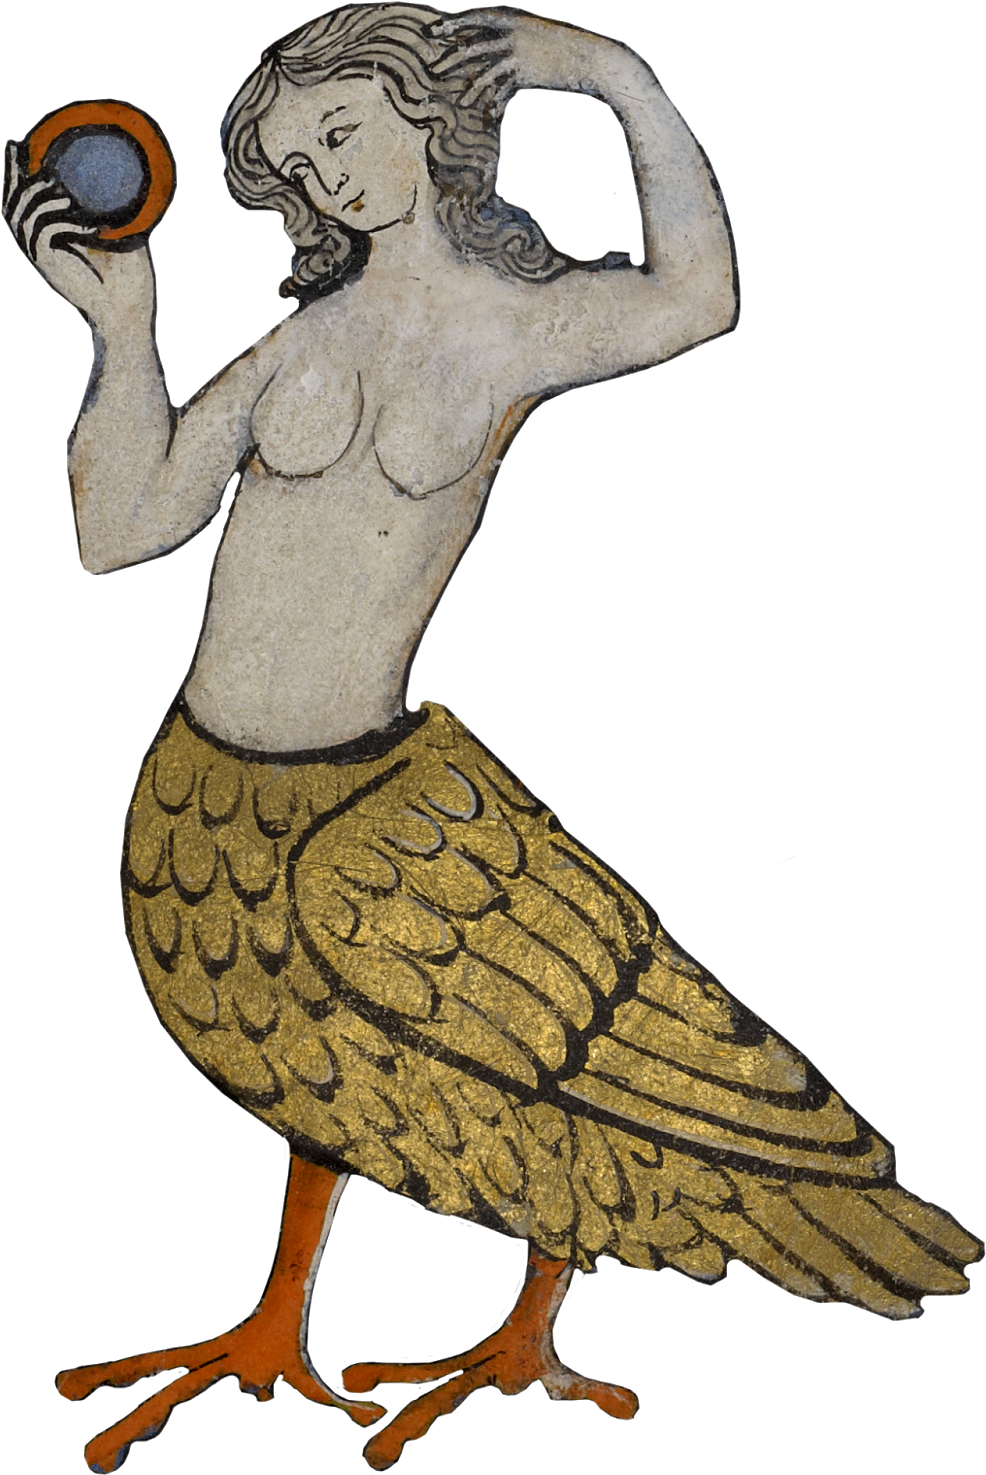 Bird-woman Mermaid, Alluring Siren At Sea, Sings So - Medieval Monsters (1096x1600)